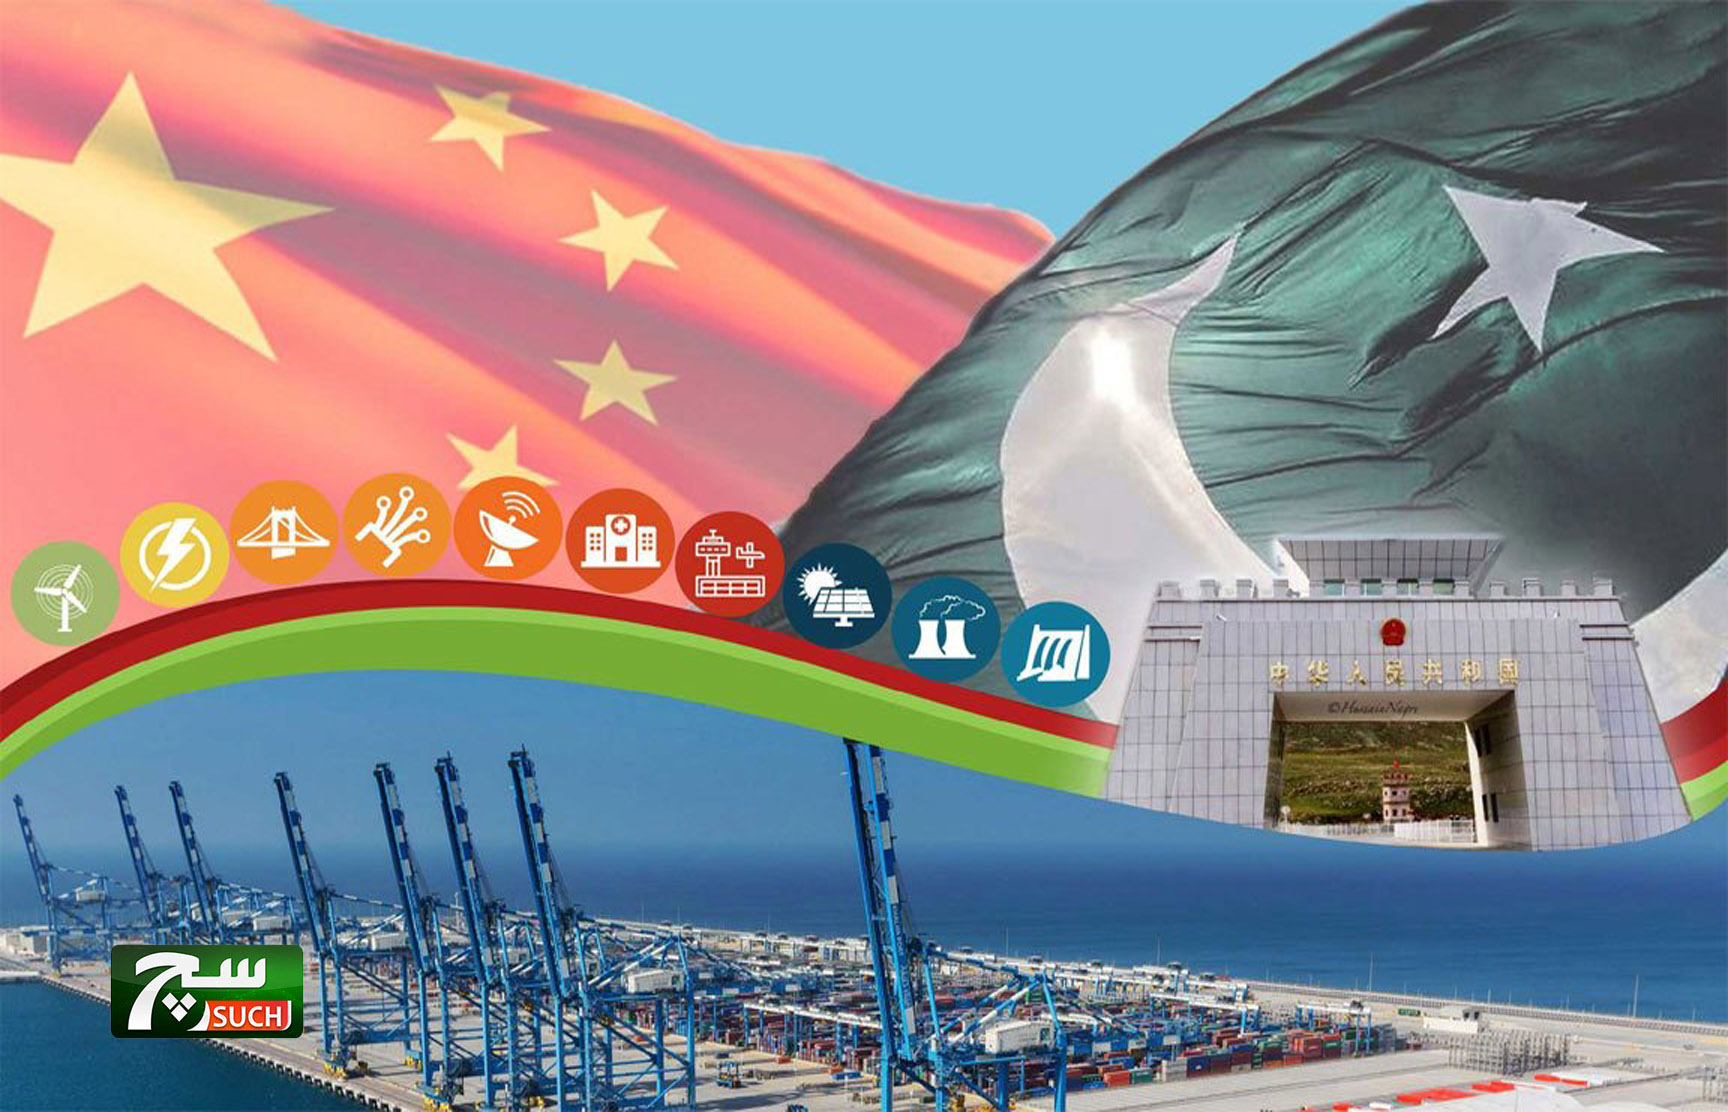 باكستان تؤسس منتدى أعمال للاستفادة القصوى من الممر الاقتصادي مع الصين